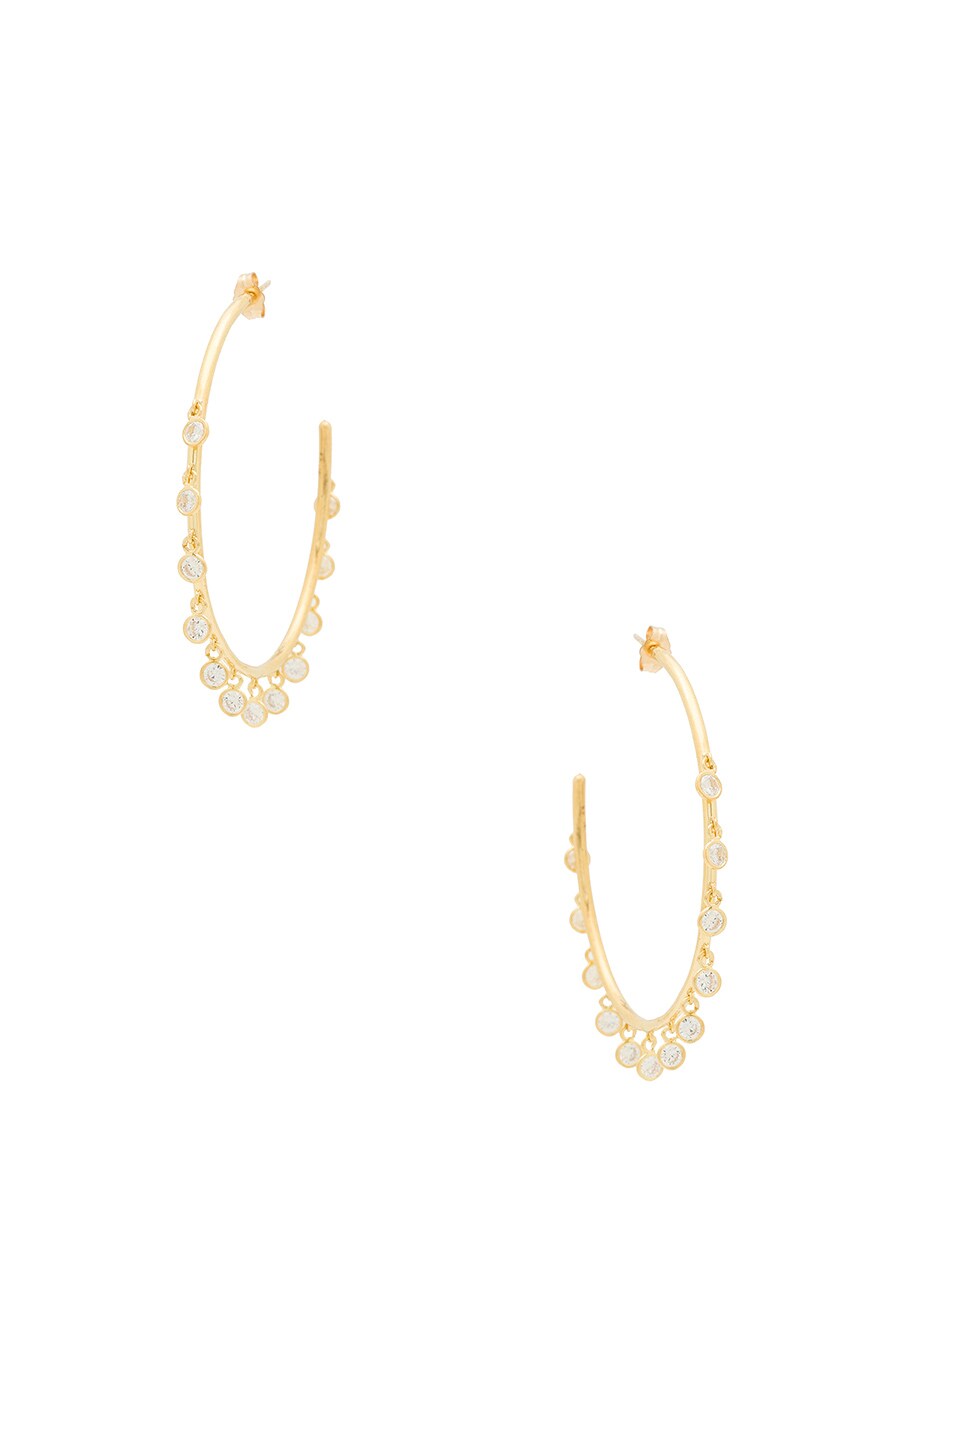 Natalie B Jewelry Odyssey Earrings in Gold | REVOLVE